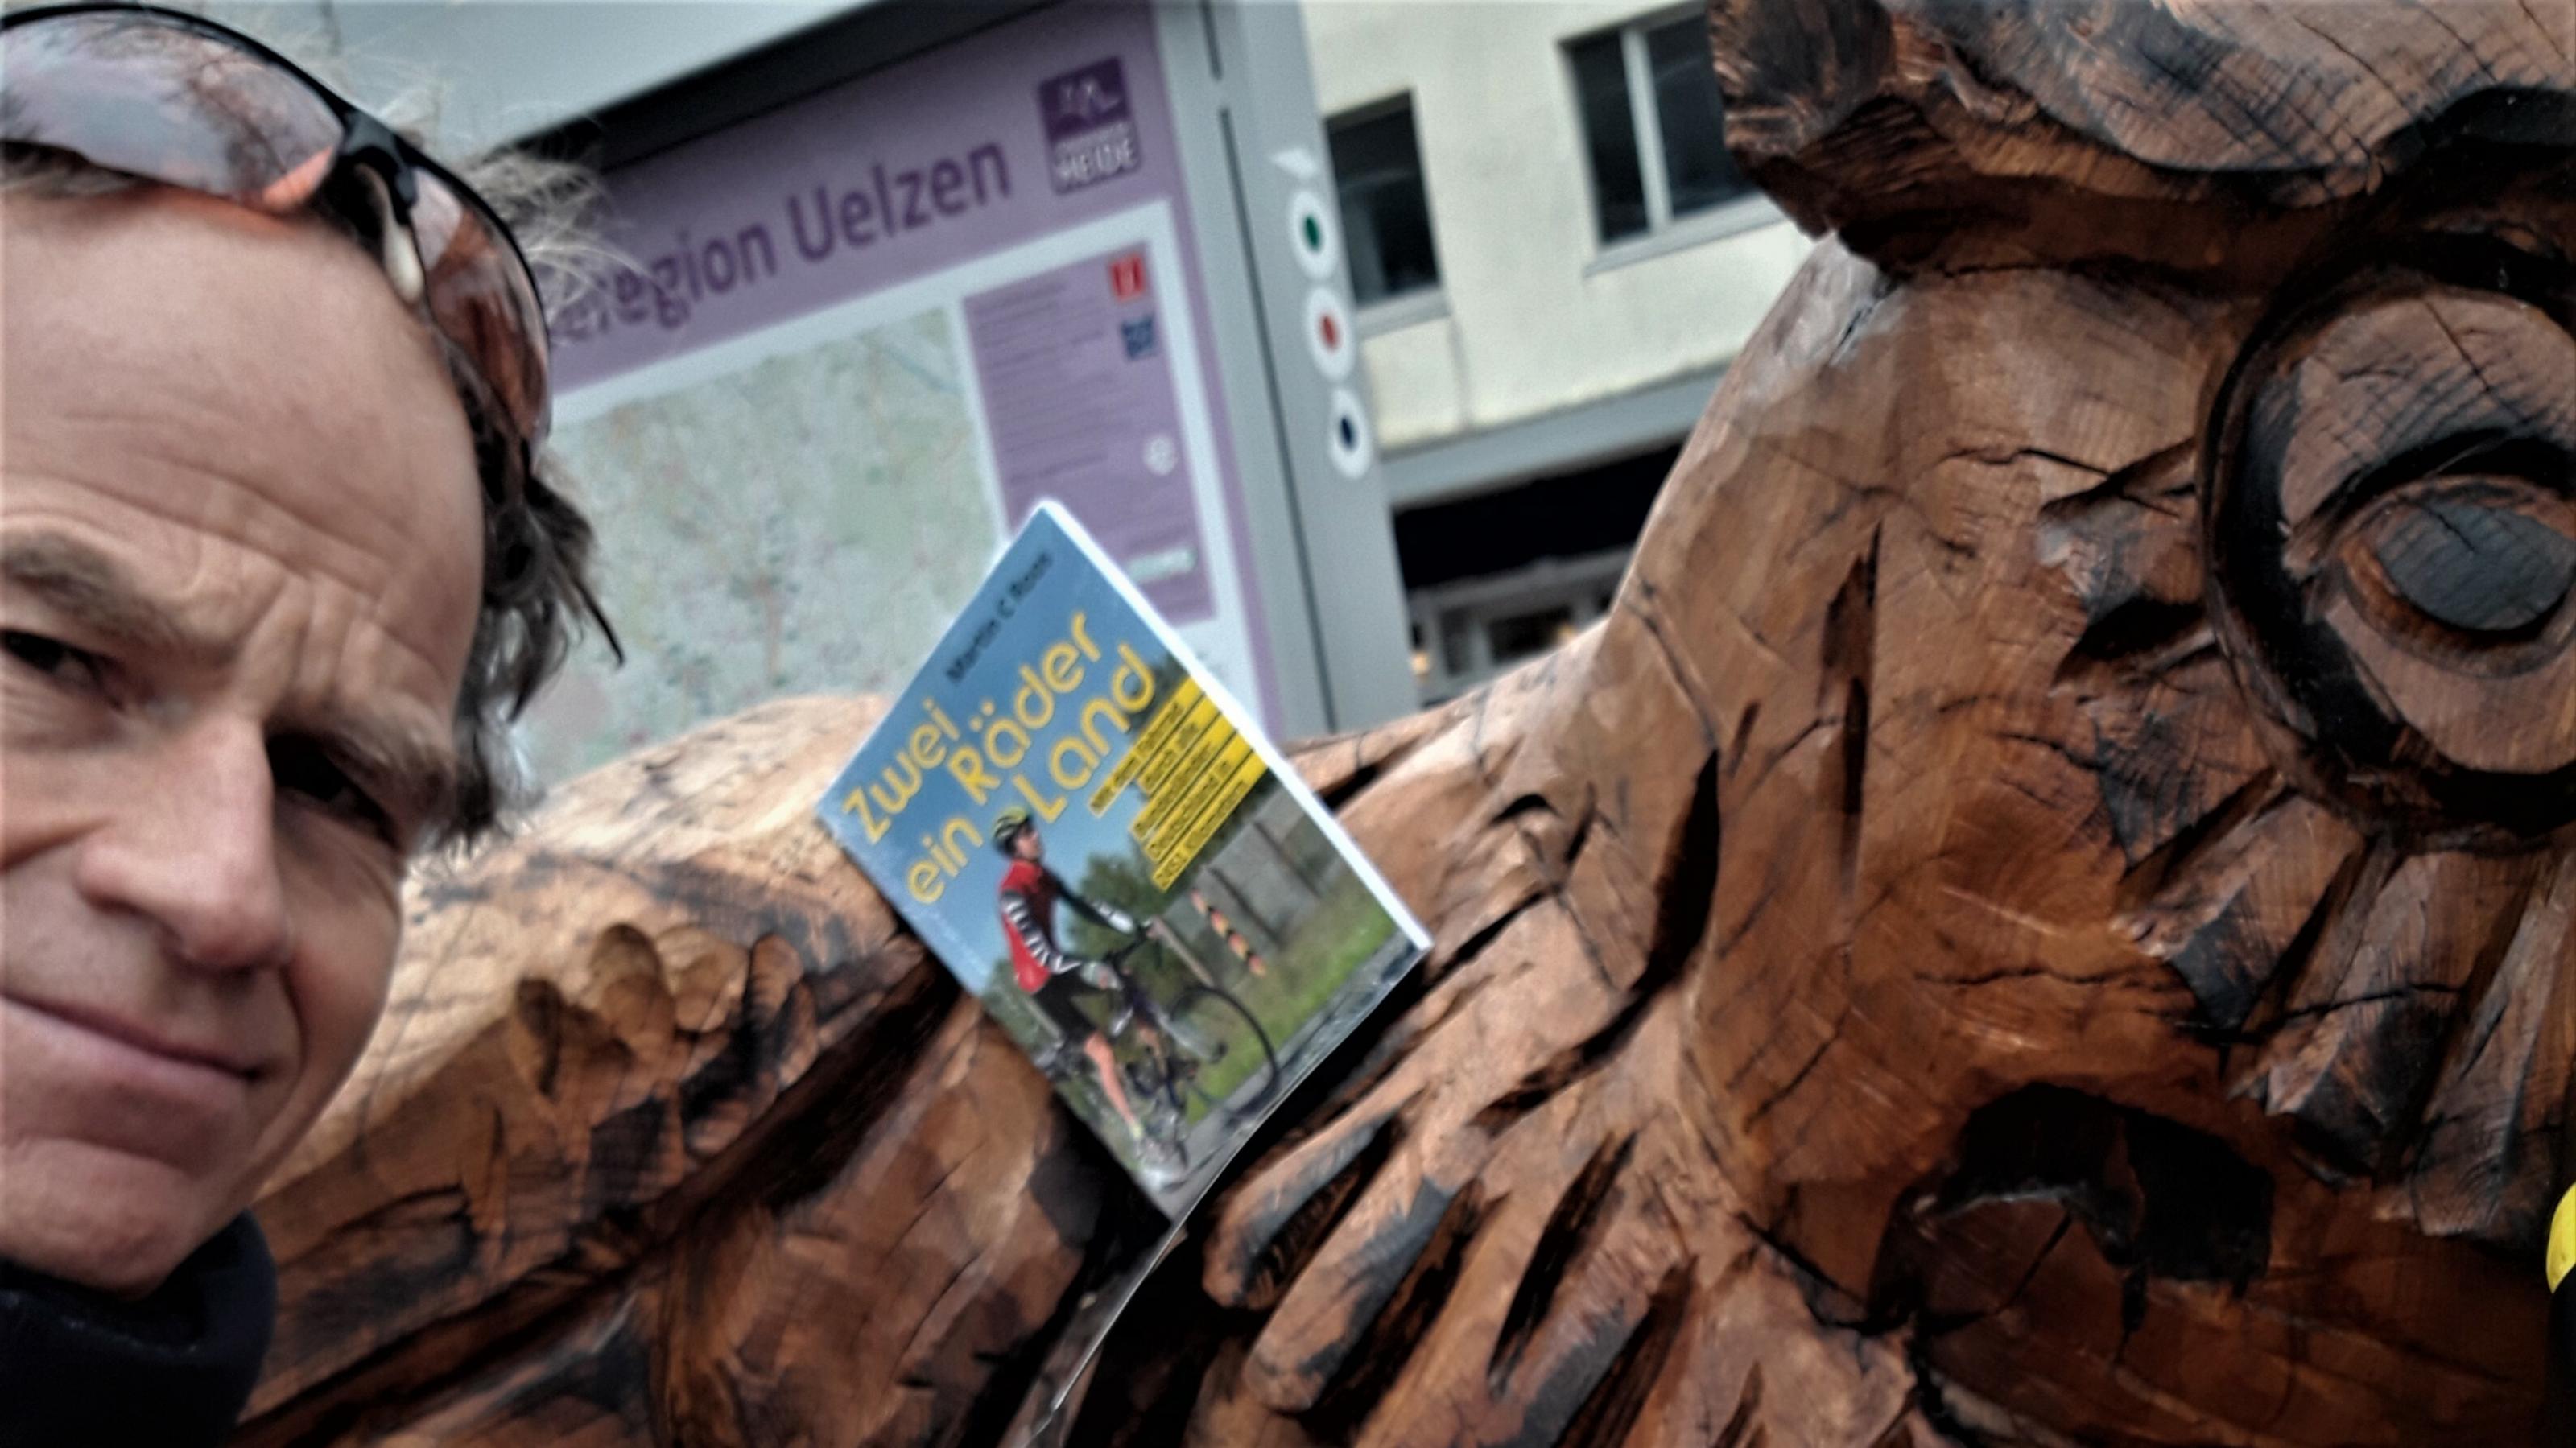 Der RadelndeReporter rastet an der riesigen Eulen-Bank mitten in Uelzen, geschaffen vom Motorsägenkünstler Andrée Löbnitz, um sein Buch „Zwei Räder, ein Land“ der Öffentlichkeit zu präsentieren.